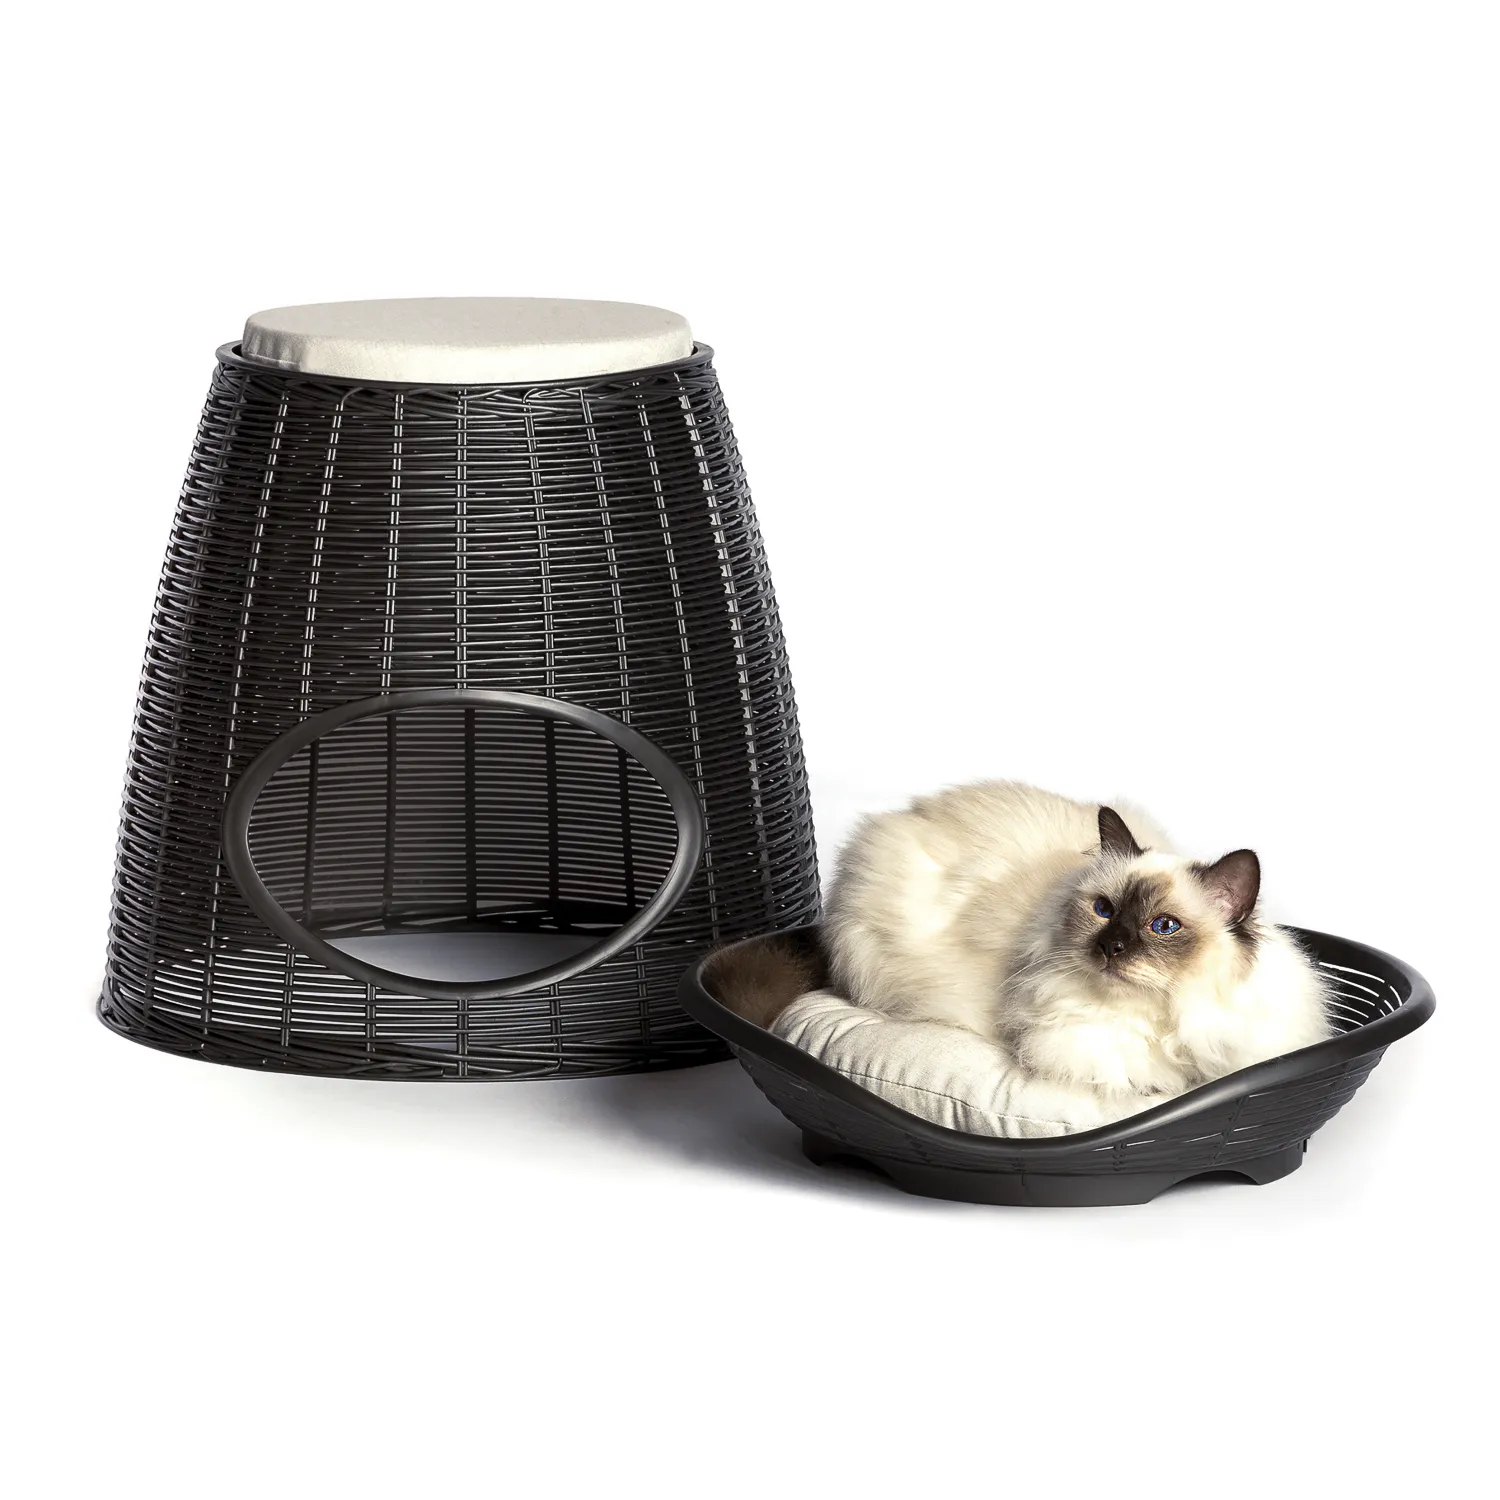 BAMA PET домик для кошек PASHA 52х60х46/55h см, с подушечками, коричневый СКИДКА 40%